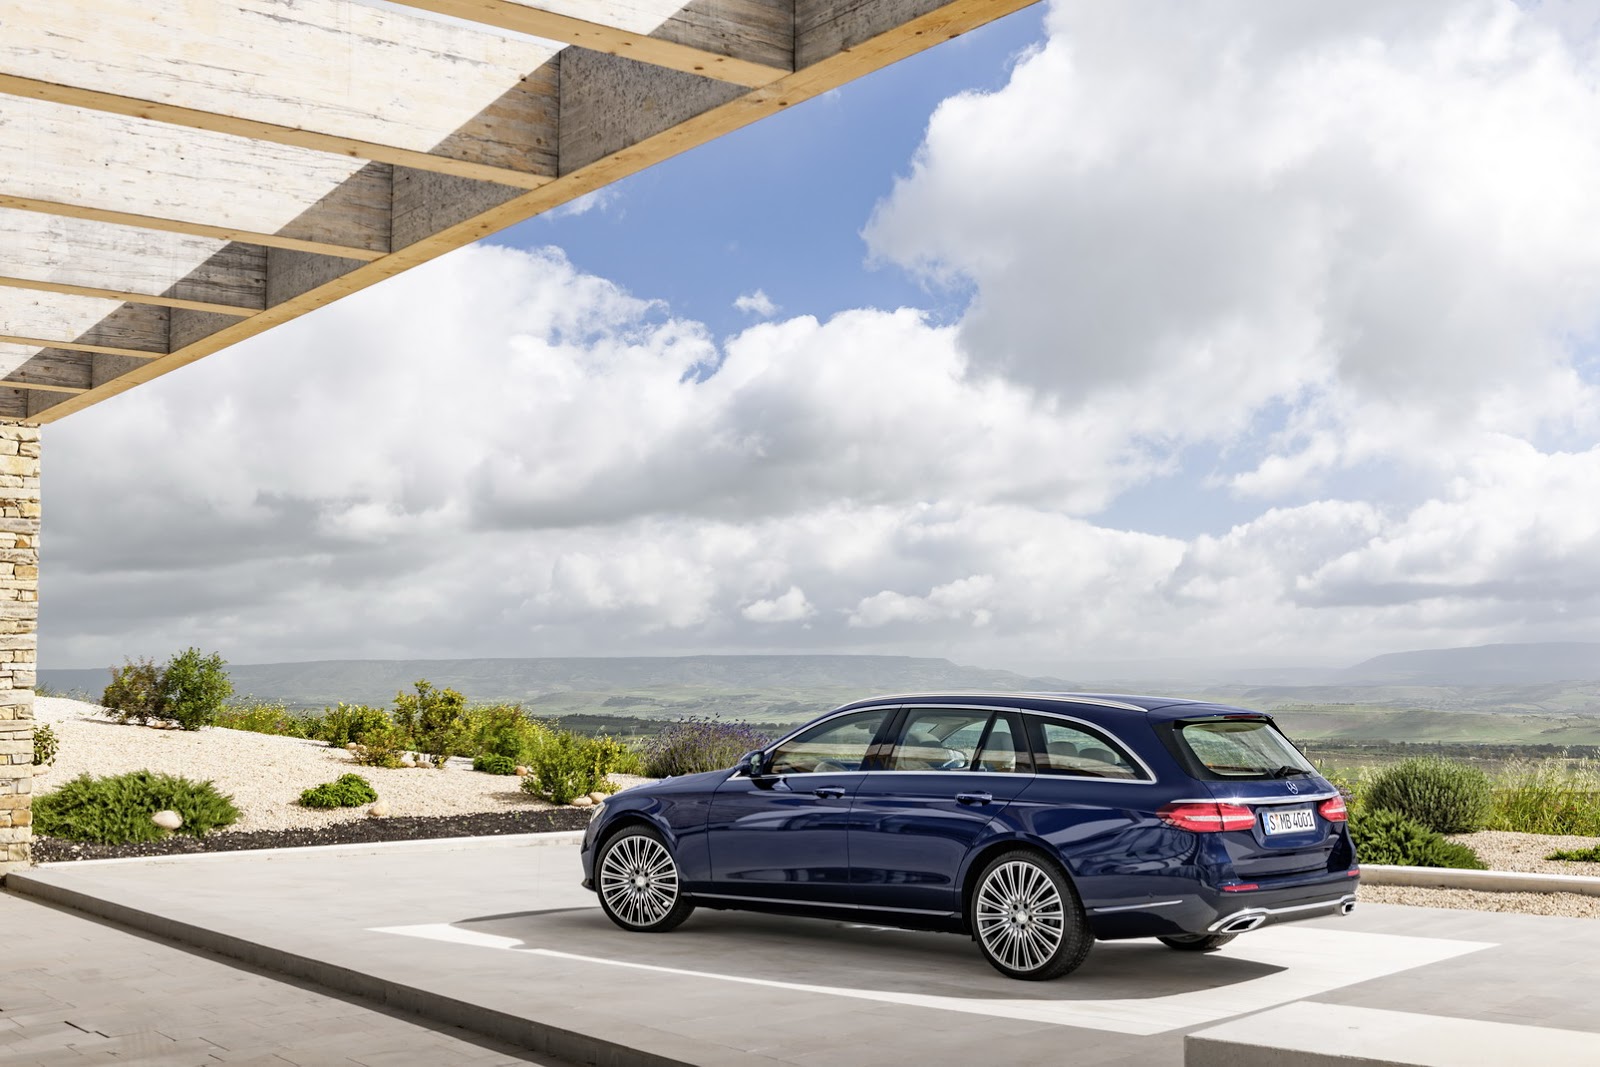 
Lấy cảm hứng thiết kế từ người anh em C-Class Estate, Mercedes-Benz E-Class Estate 2017 trông phong cách hơn hẳn phiên bản cũ. Thiết kế tổng thể của Mercedes-Benz E-Class Estate 2017 tạo cảm giác không góc cạnh như trước, đặc biệt là ở đuôi xe.
